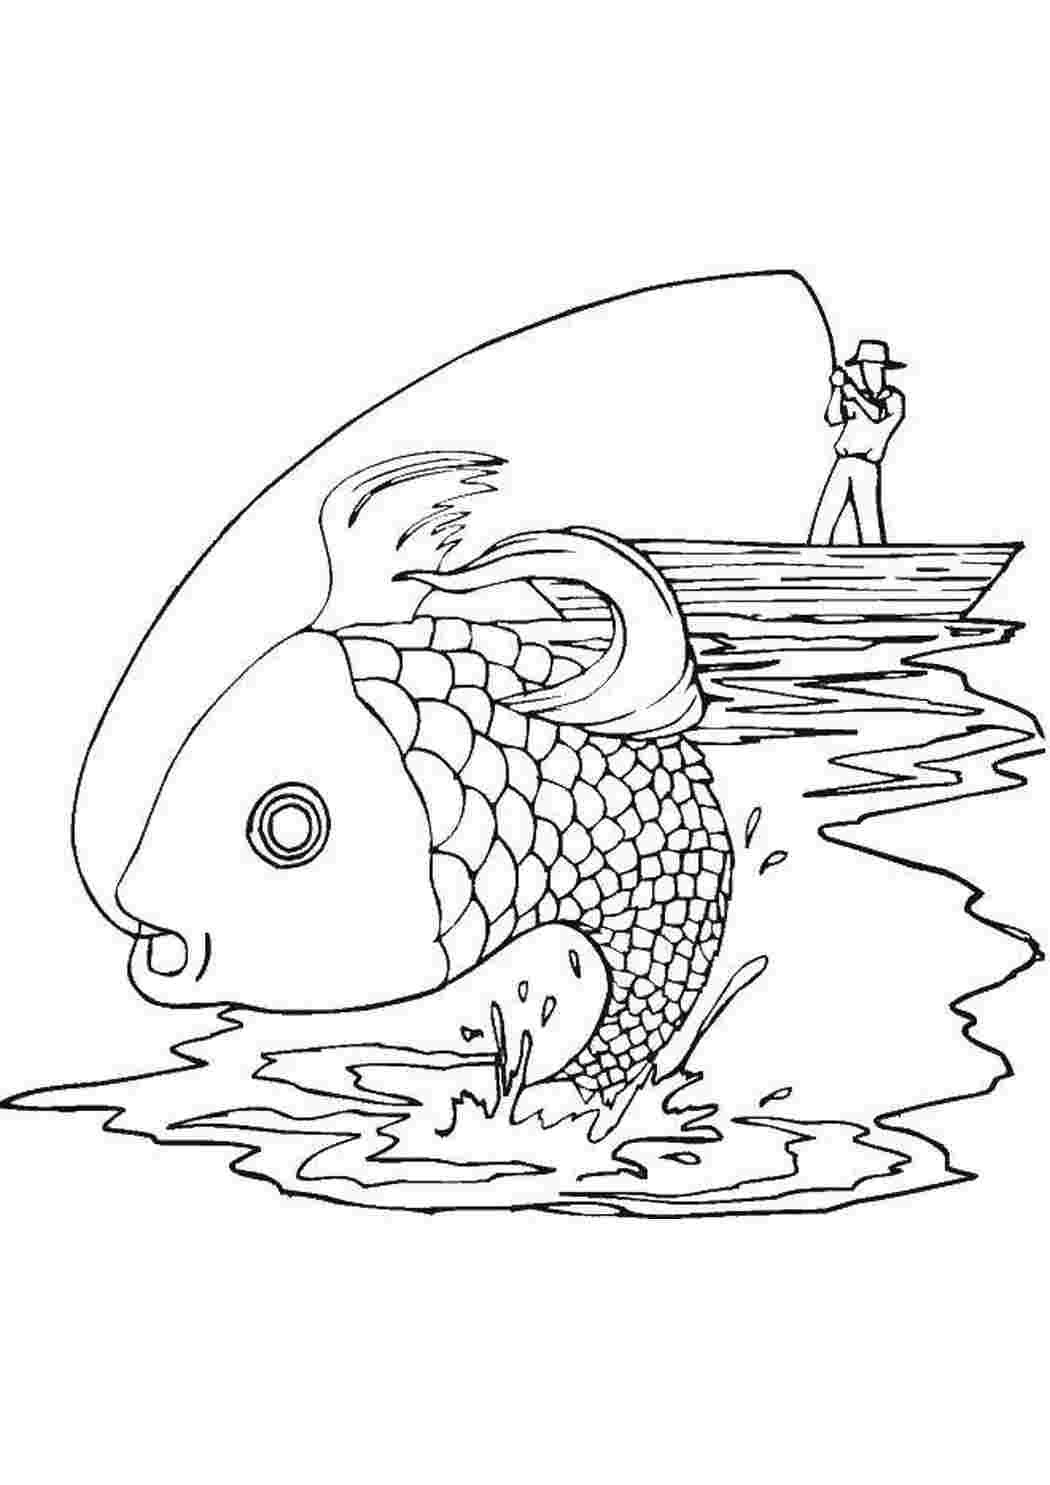 Рыбалка рисунок: векторные изображения и иллюстрации, которые можно скачать бесплатно | Freepik